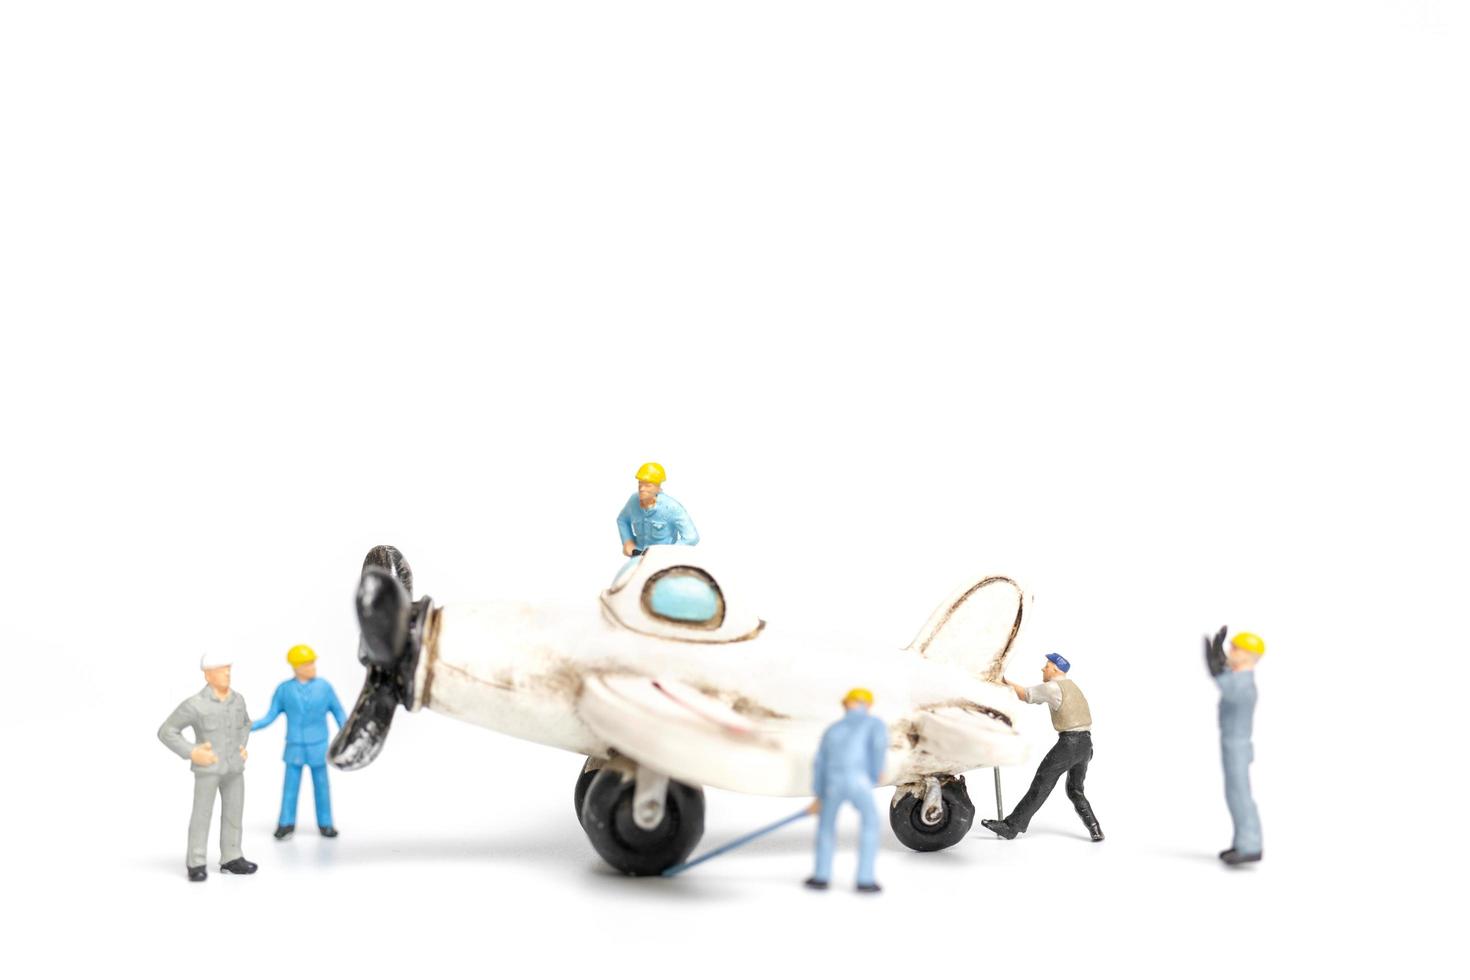 miniatyrarbetare som reparerar ett leksaksflygplan på en vit bakgrund foto